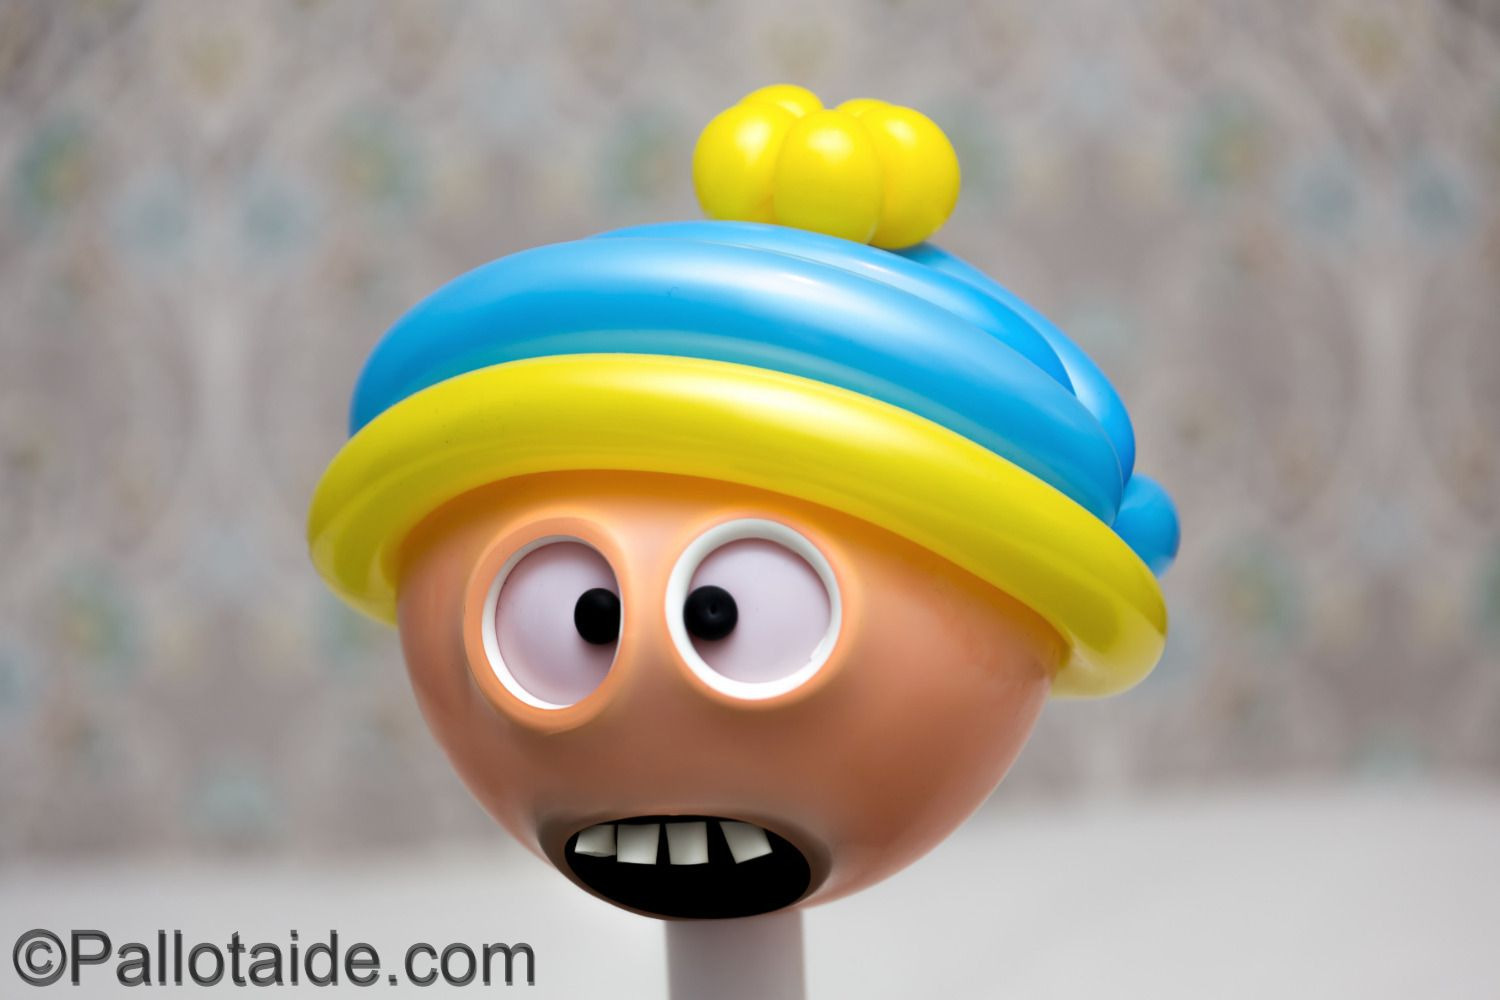 cartman - made using 100% latex balloons by Pallotaide - tehty pelkistä lateksi-ilmapalloista. Southparkin Cartman.